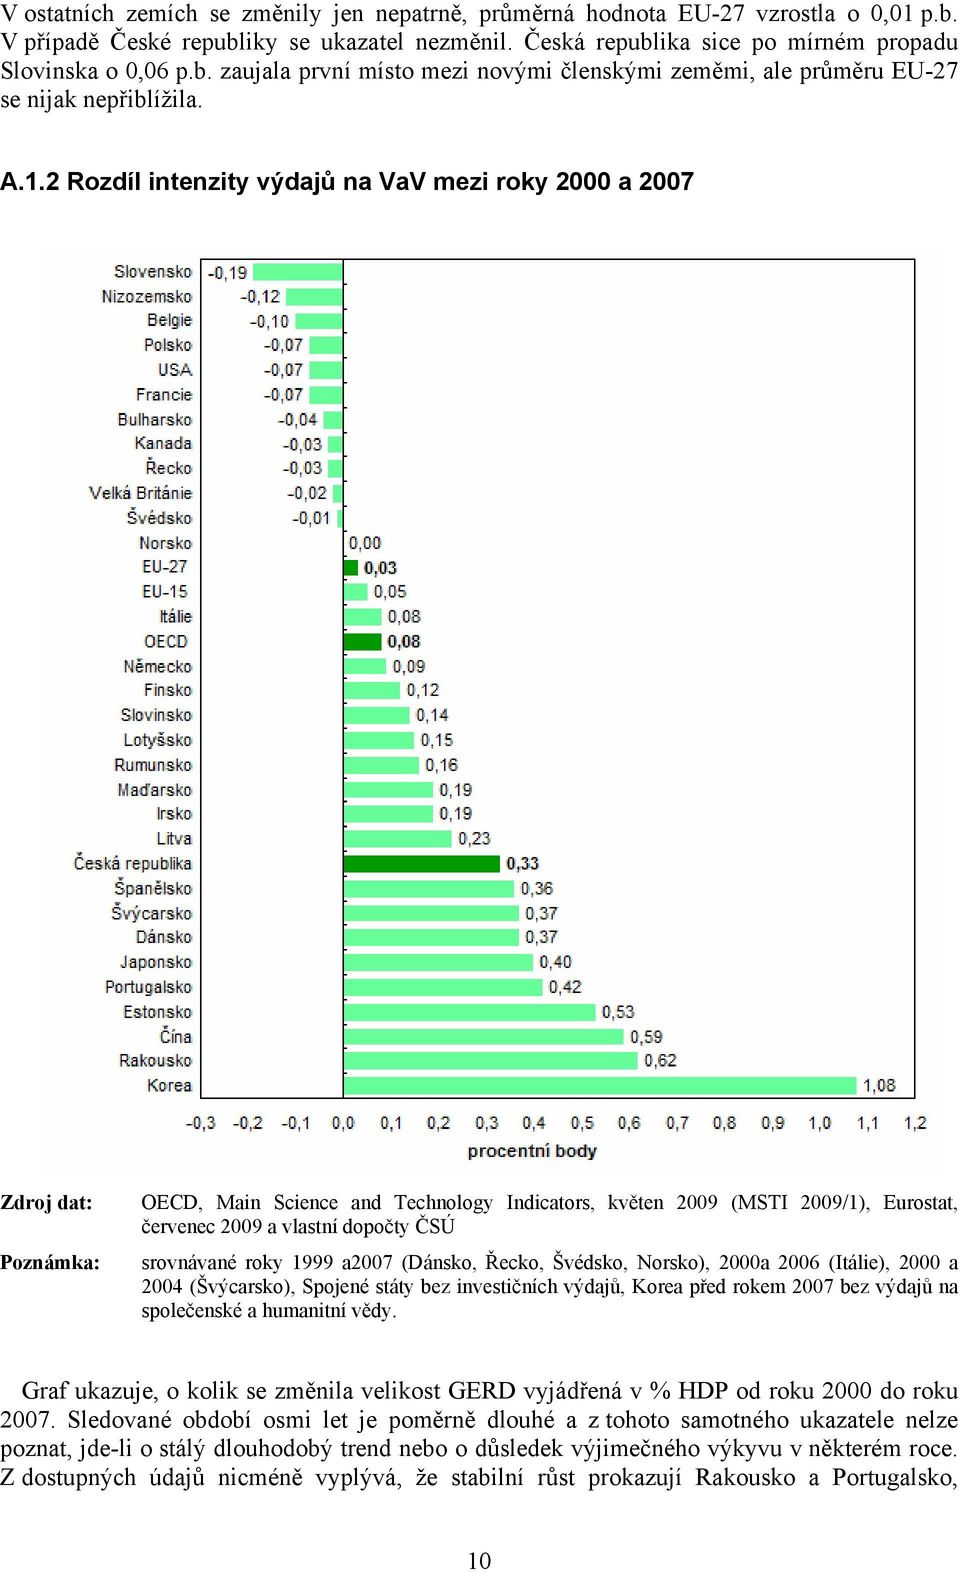 srovnávané roky 1999 a2007 (Dánsko, Řecko, Švédsko, Norsko), 2000a 2006 (Itálie), 2000 a 2004 (Švýcarsko), Spojené státy bez investičních výdajů, Korea před rokem 2007 bez výdajů na společenské a